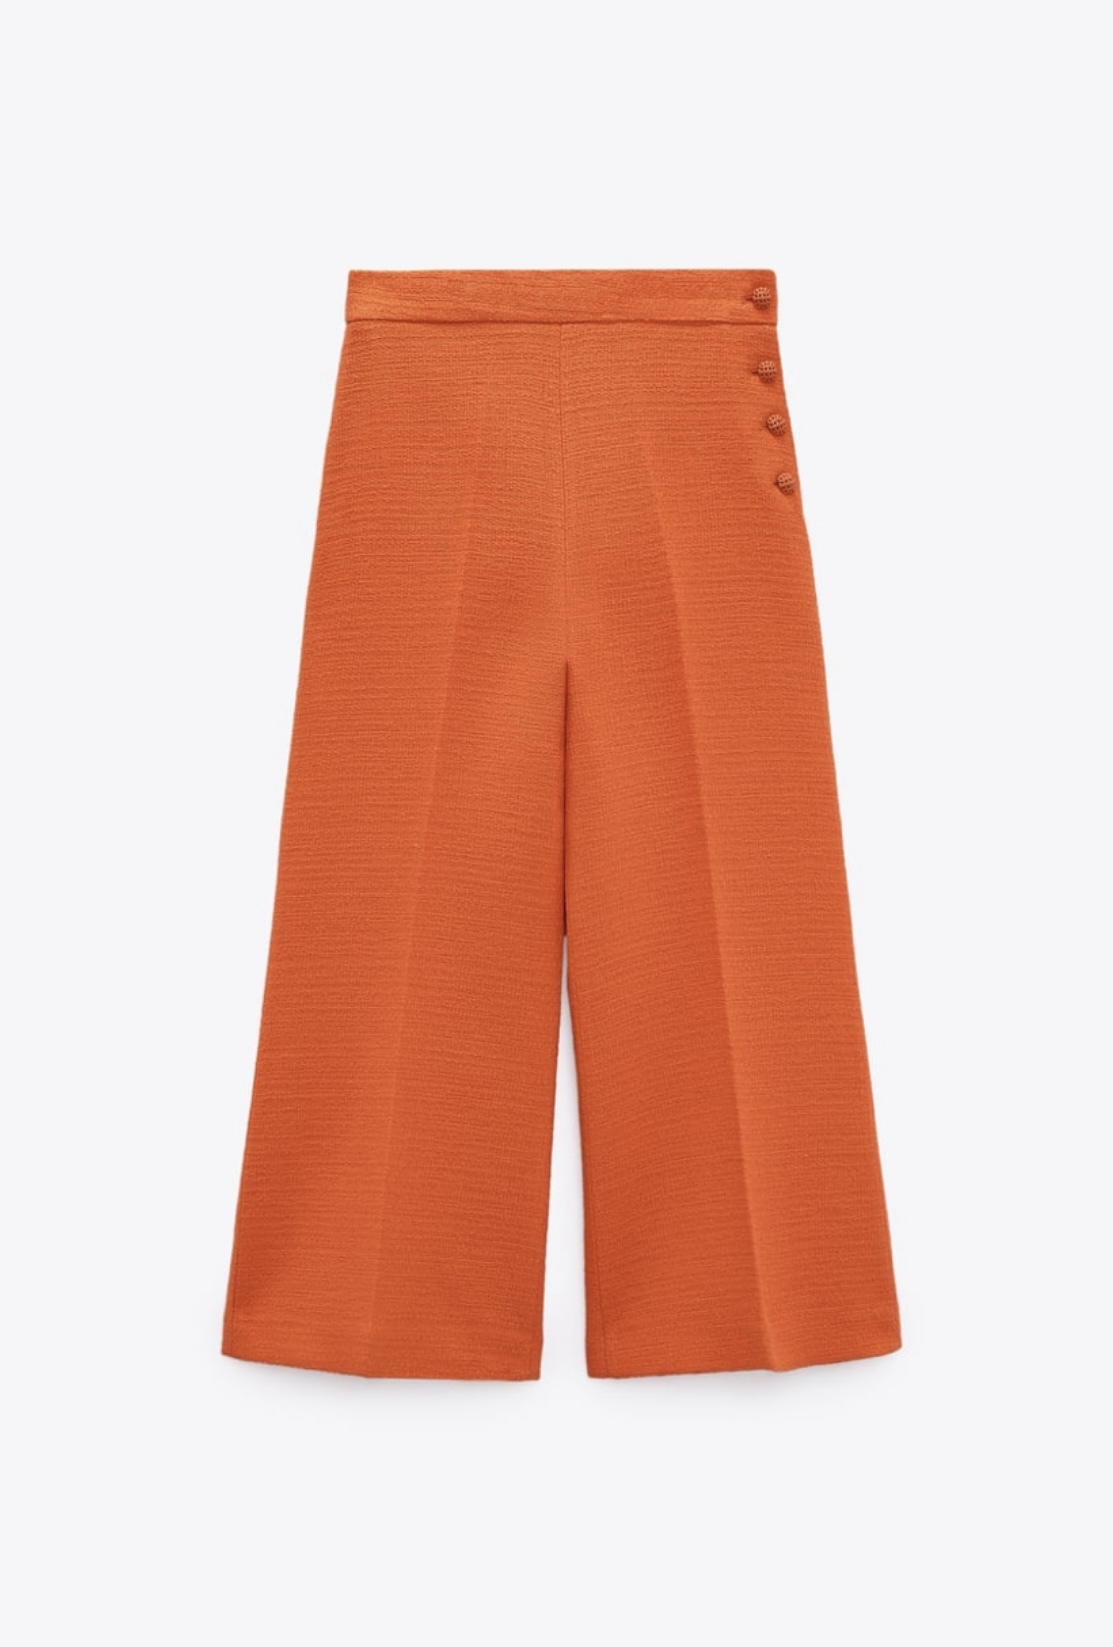 Pantalón naranja de Zara